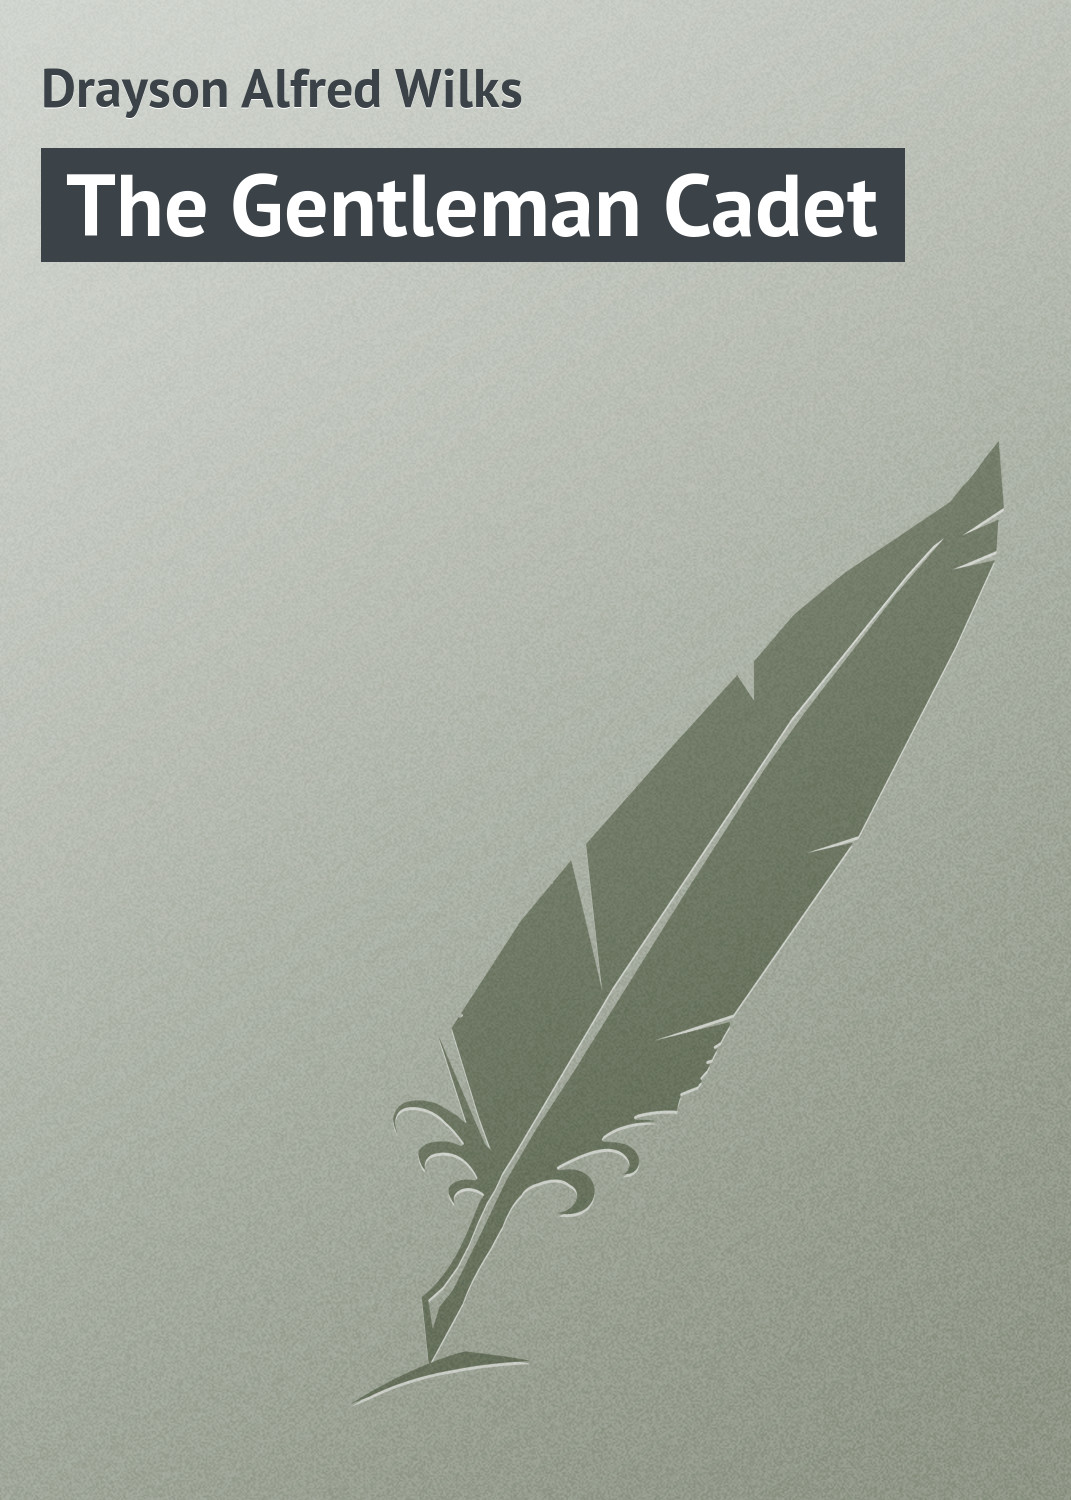 Книга The Gentleman Cadet из серии , созданная Alfred Drayson, может относится к жанру Зарубежная классика, Зарубежные детские книги, Иностранные языки. Стоимость электронной книги The Gentleman Cadet с идентификатором 23163155 составляет 5.99 руб.